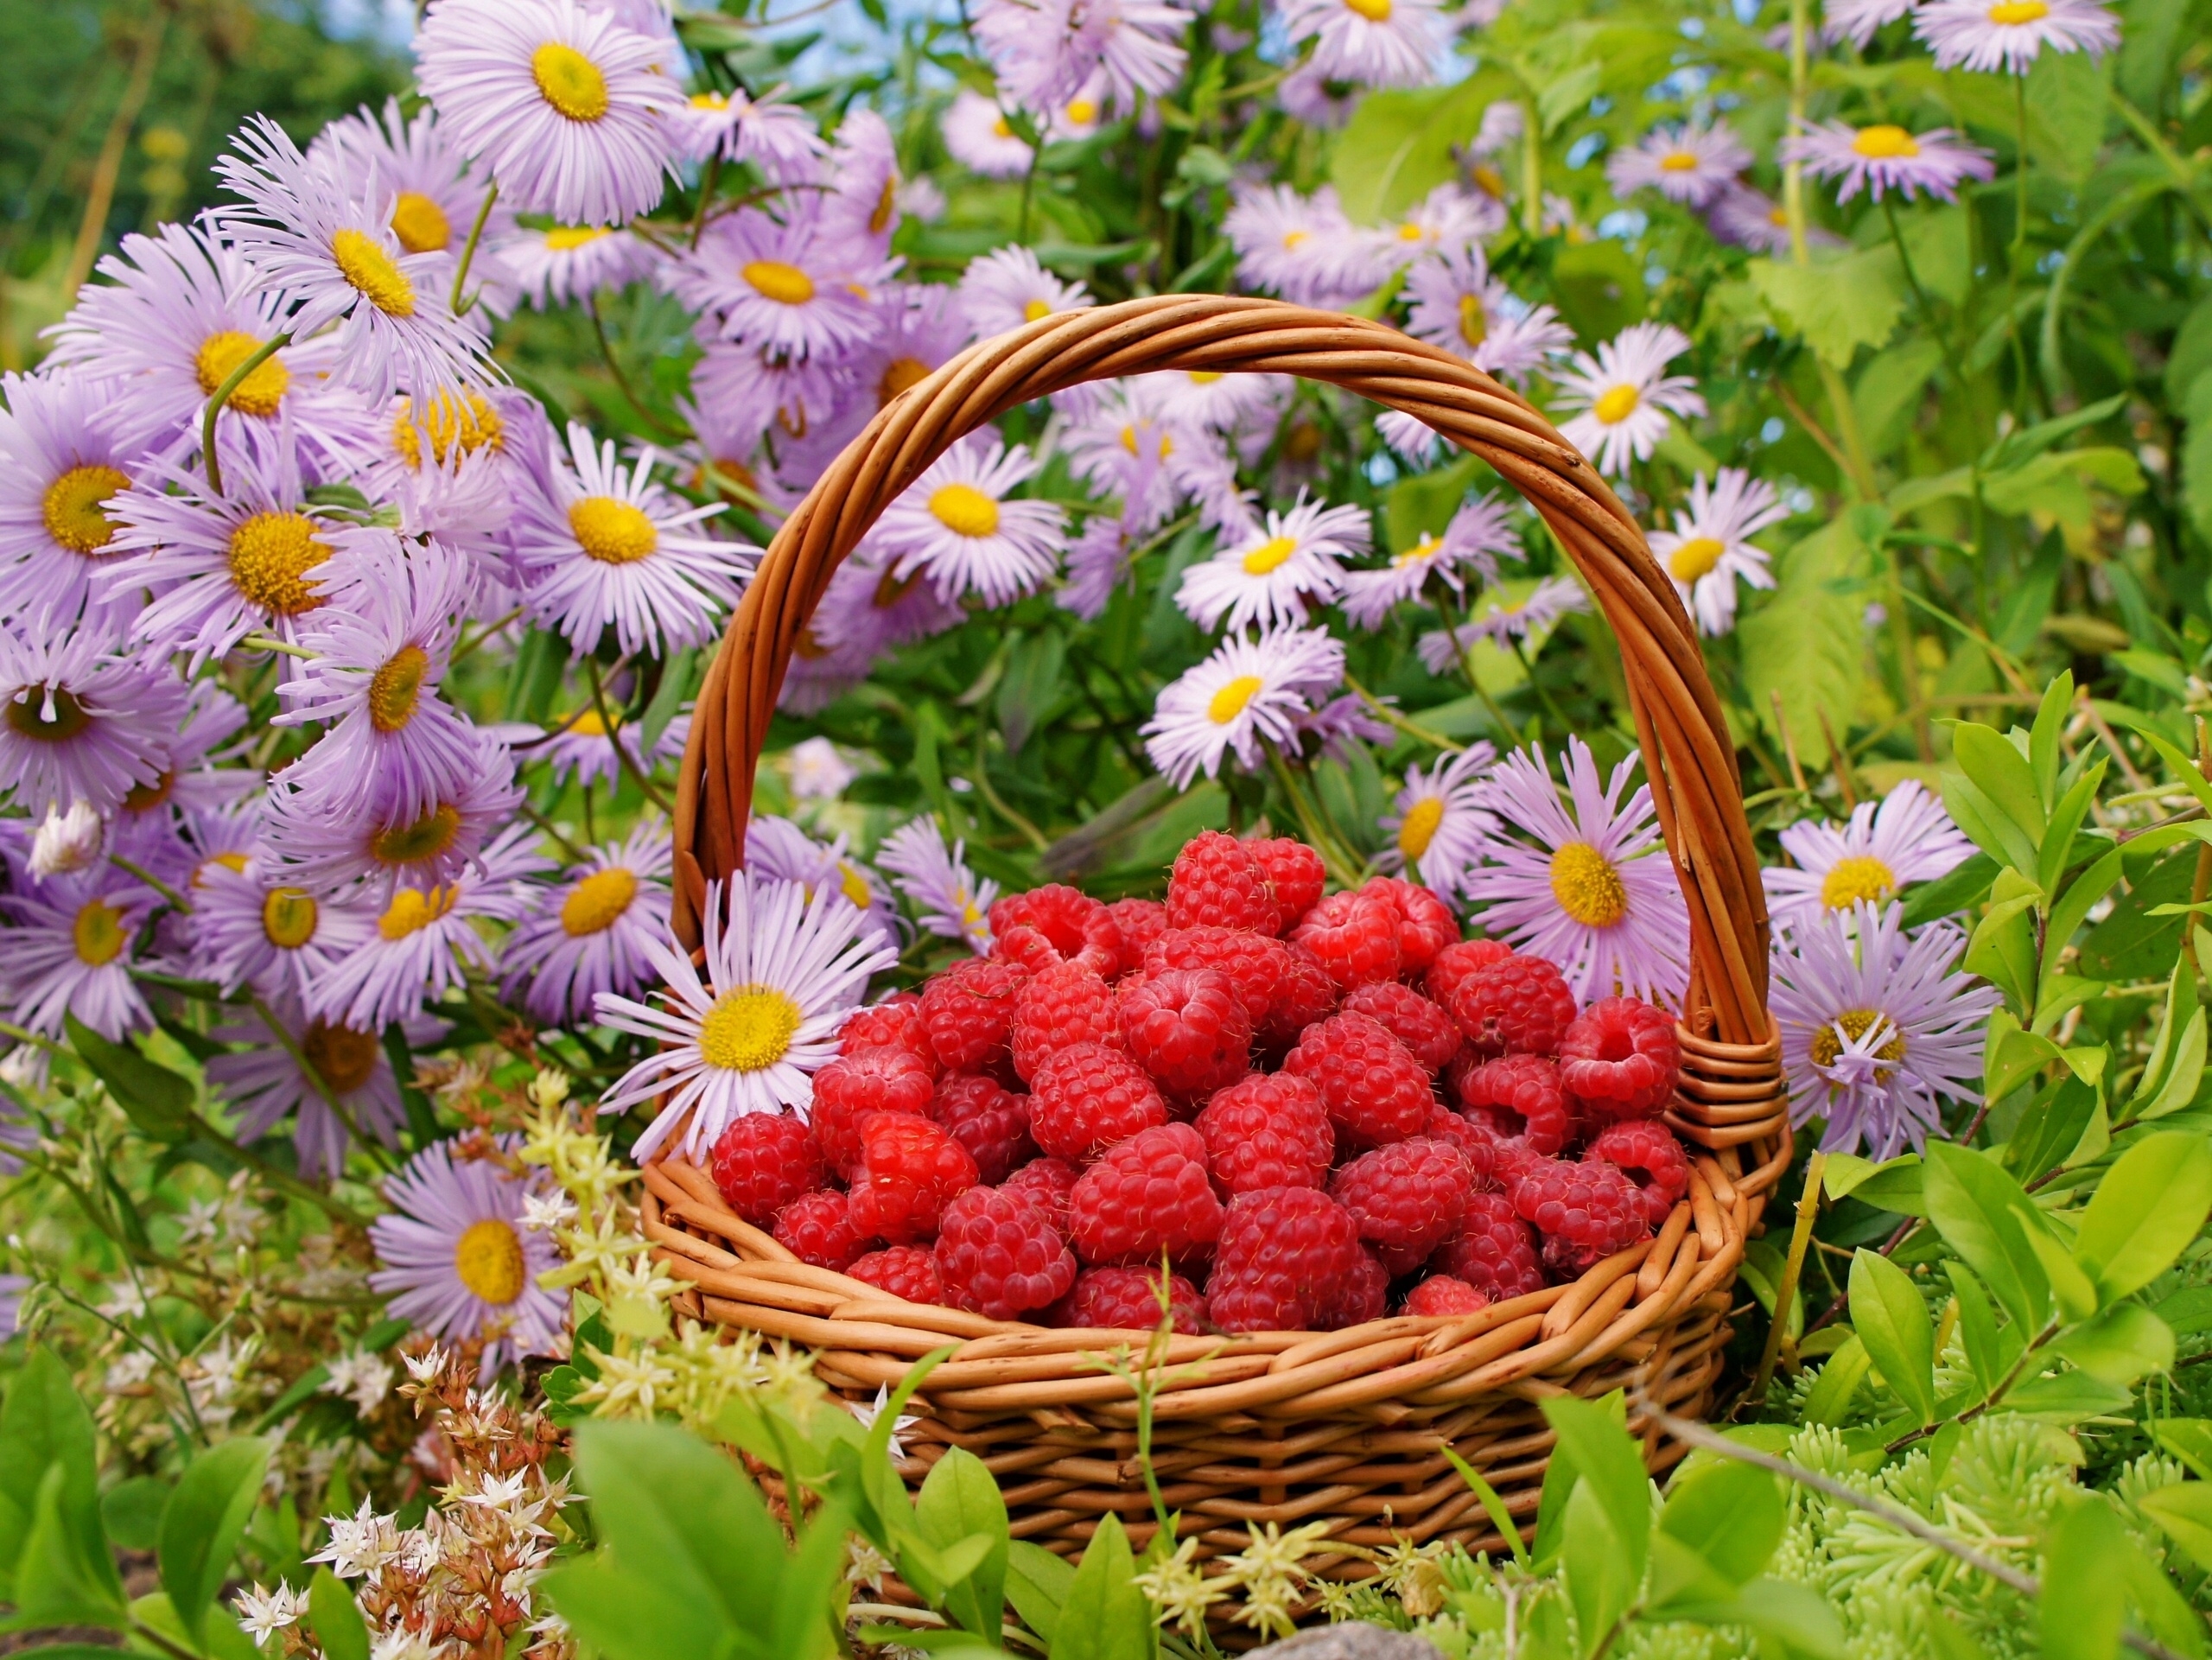 Raspberry berries, flowers, food, basket 8k Backgrounds